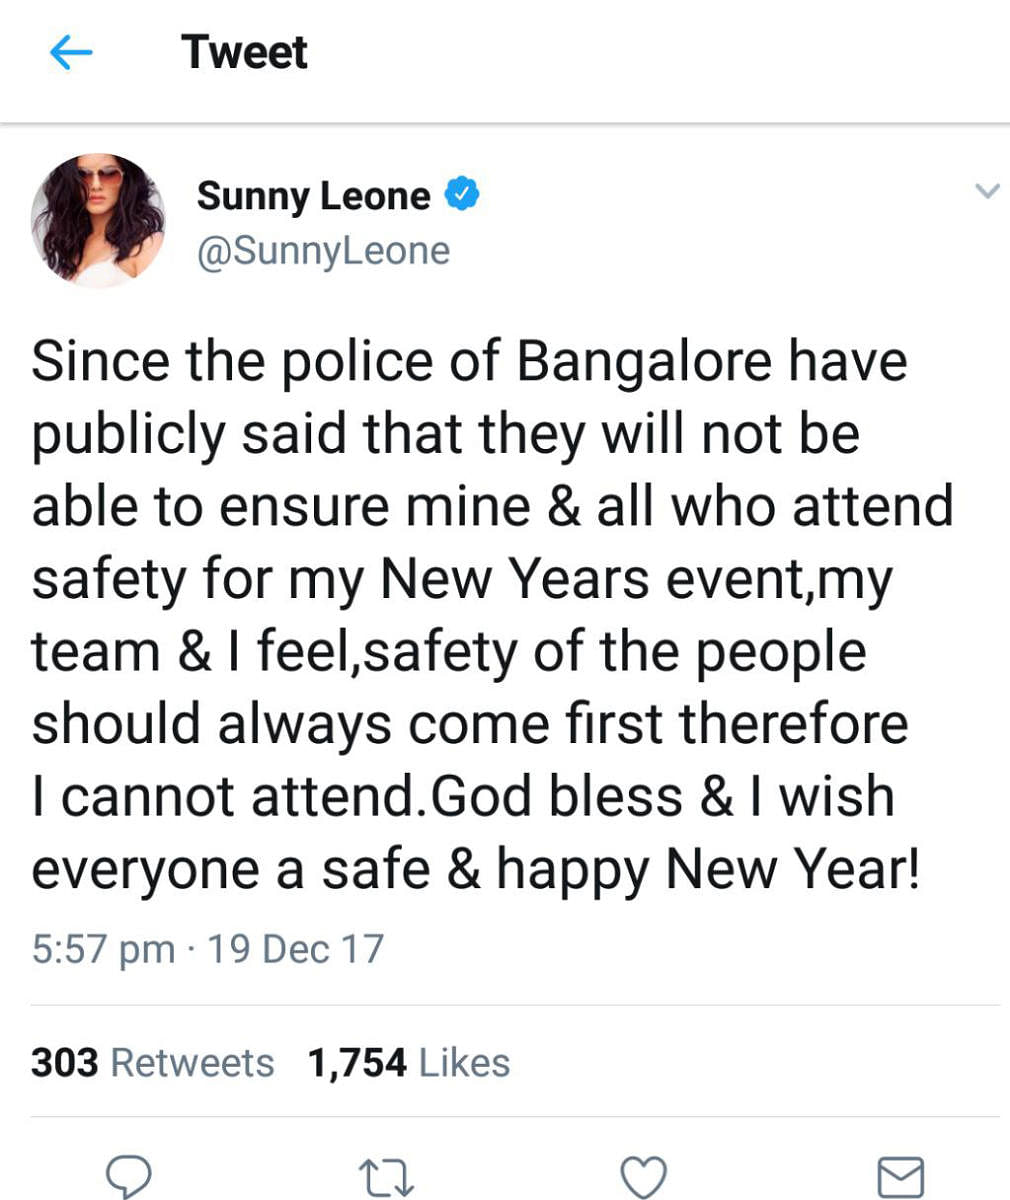 Sunny Leone's tweet.